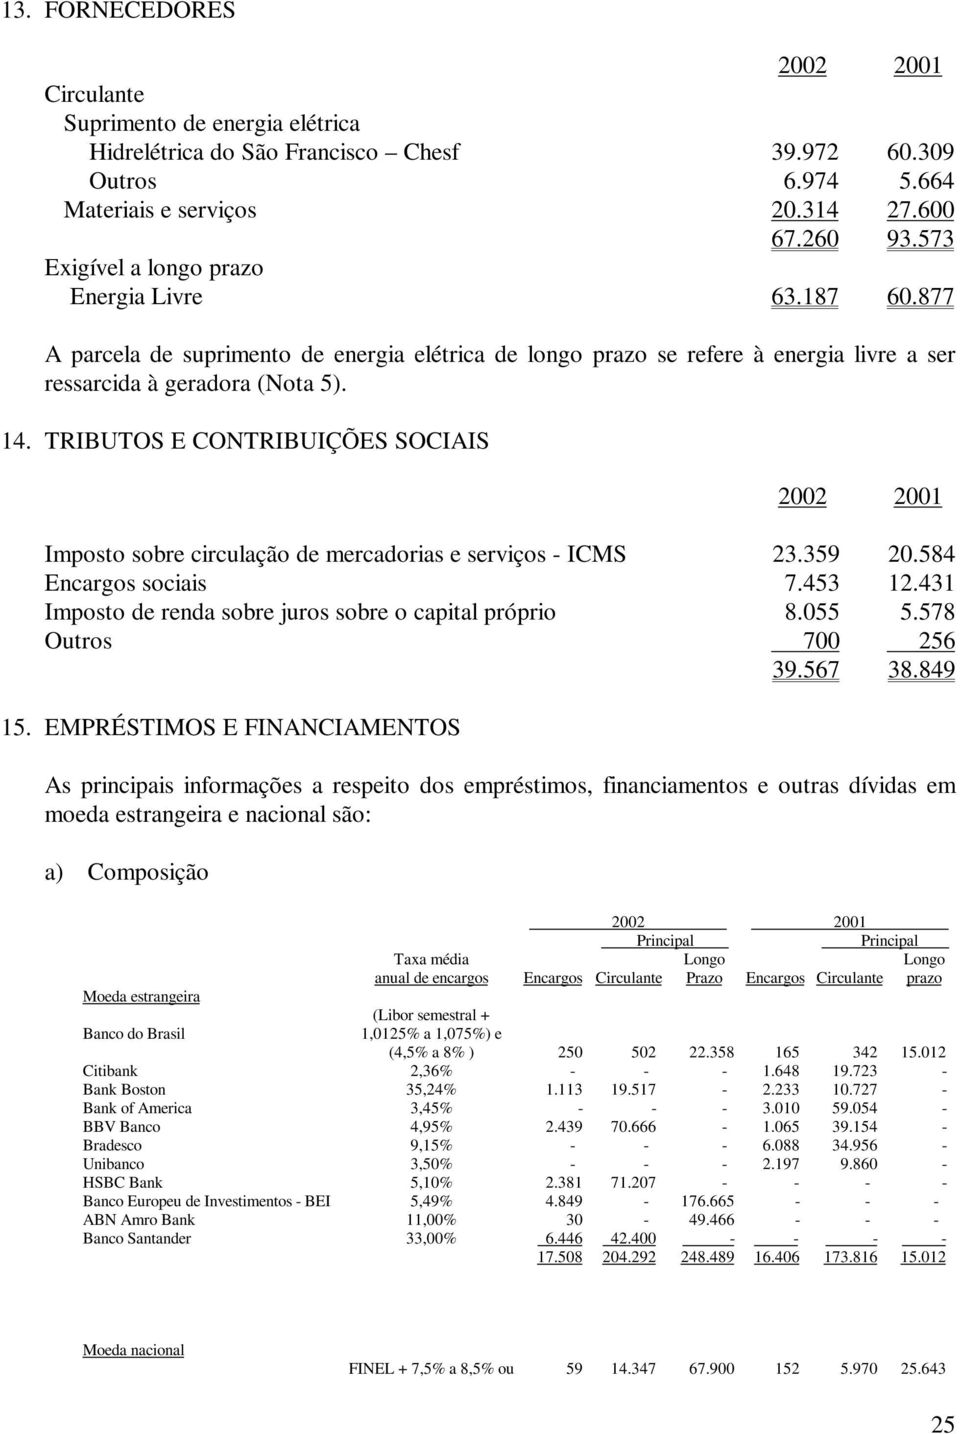 TRIBUTOS E CONTRIBUIÇÕES SOCIAIS 2002 2001 Imposto sobre circulação de mercadorias e serviços - ICMS 23.359 20.584 Encargos sociais 7.453 12.431 Imposto de renda sobre juros sobre o capital próprio 8.